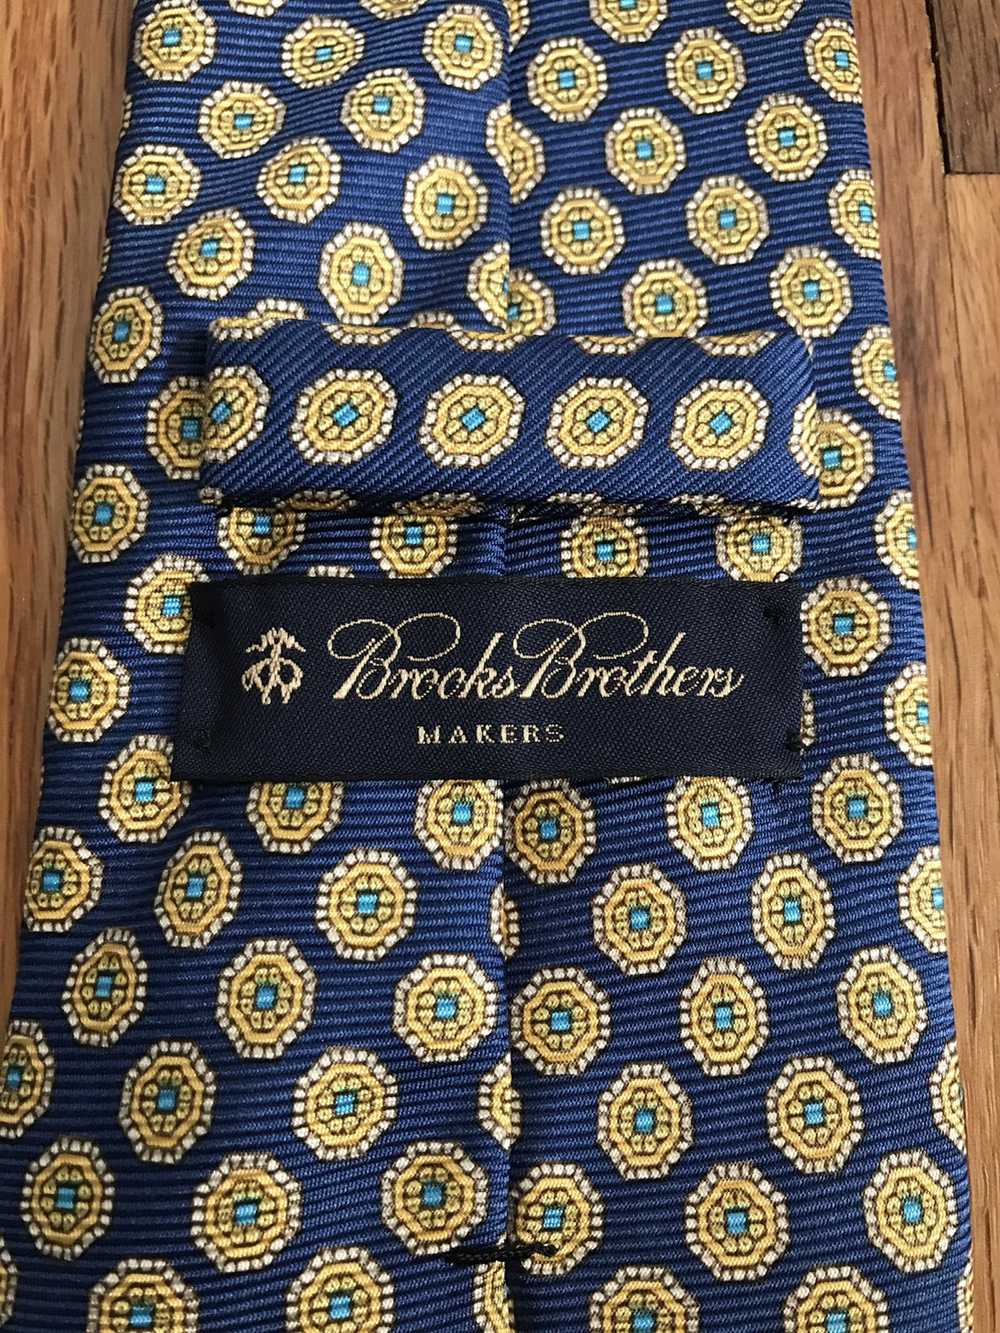 Brooks Brothers Brooks Brothers Tie - image 4